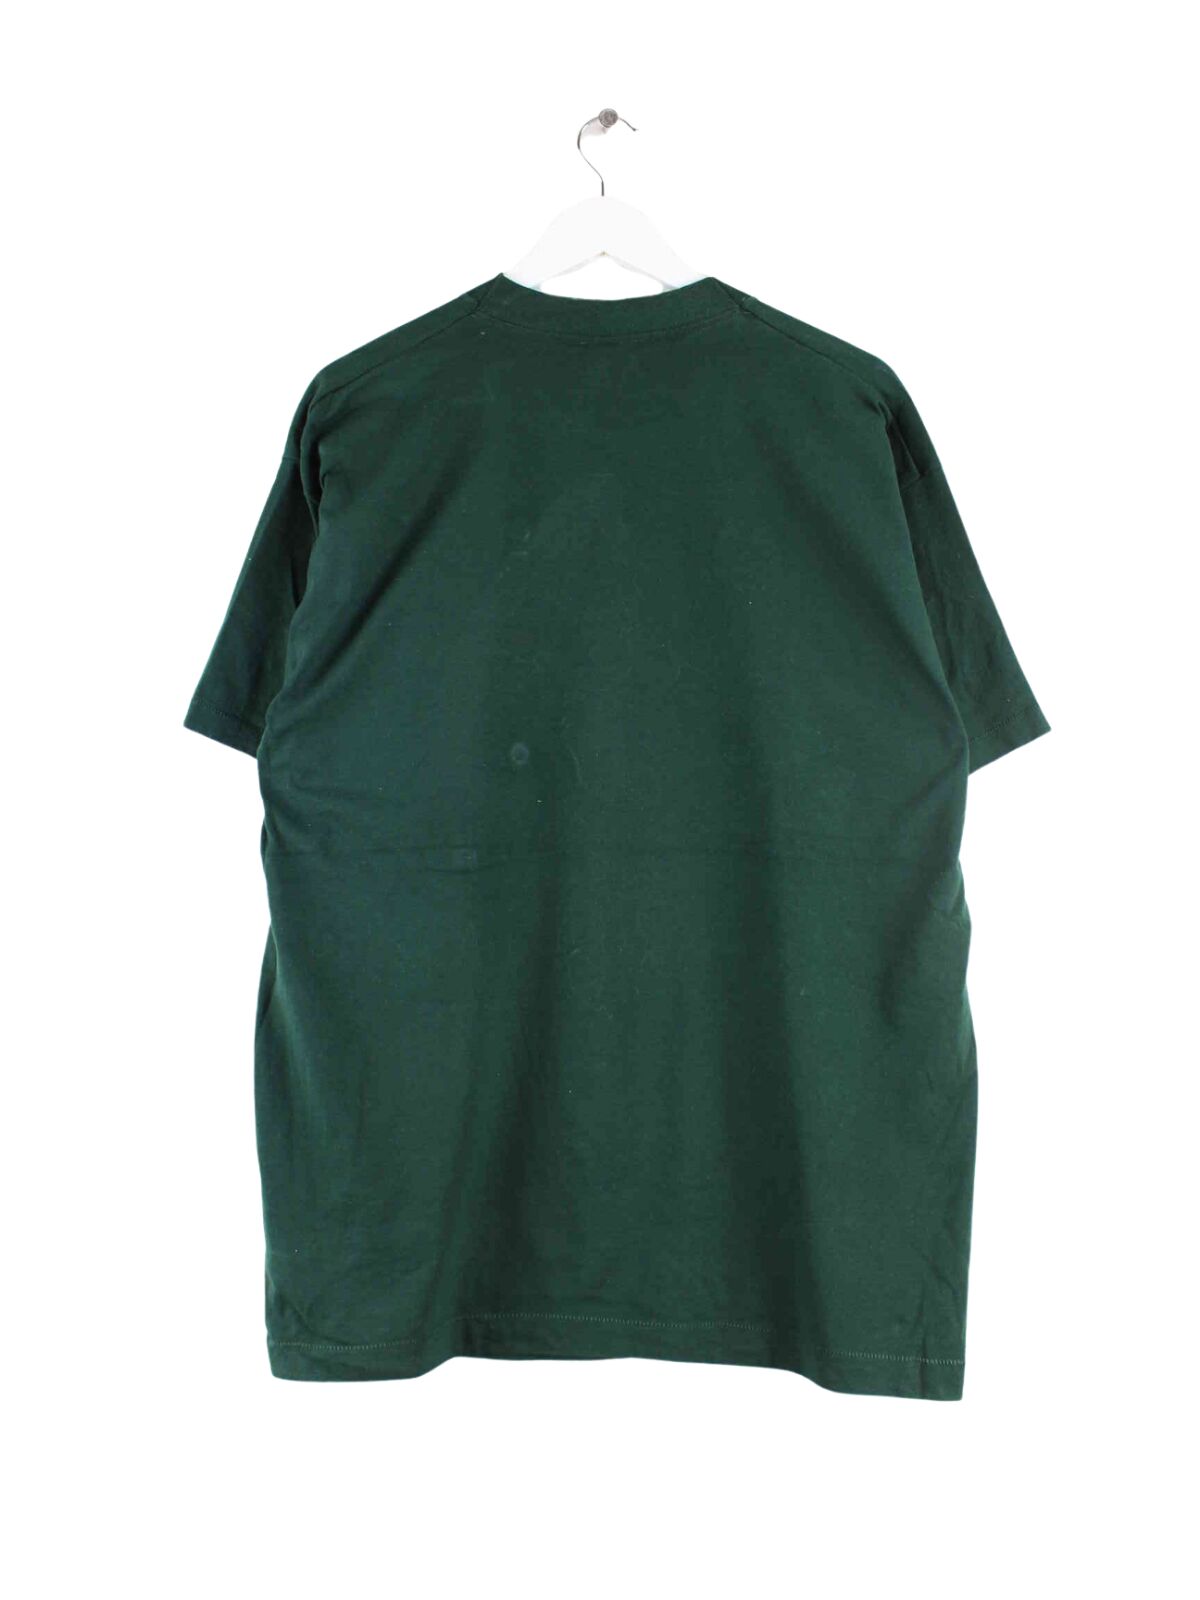 Vintage 90s Painted Single Stitched T-Shirt Grün L (back image)